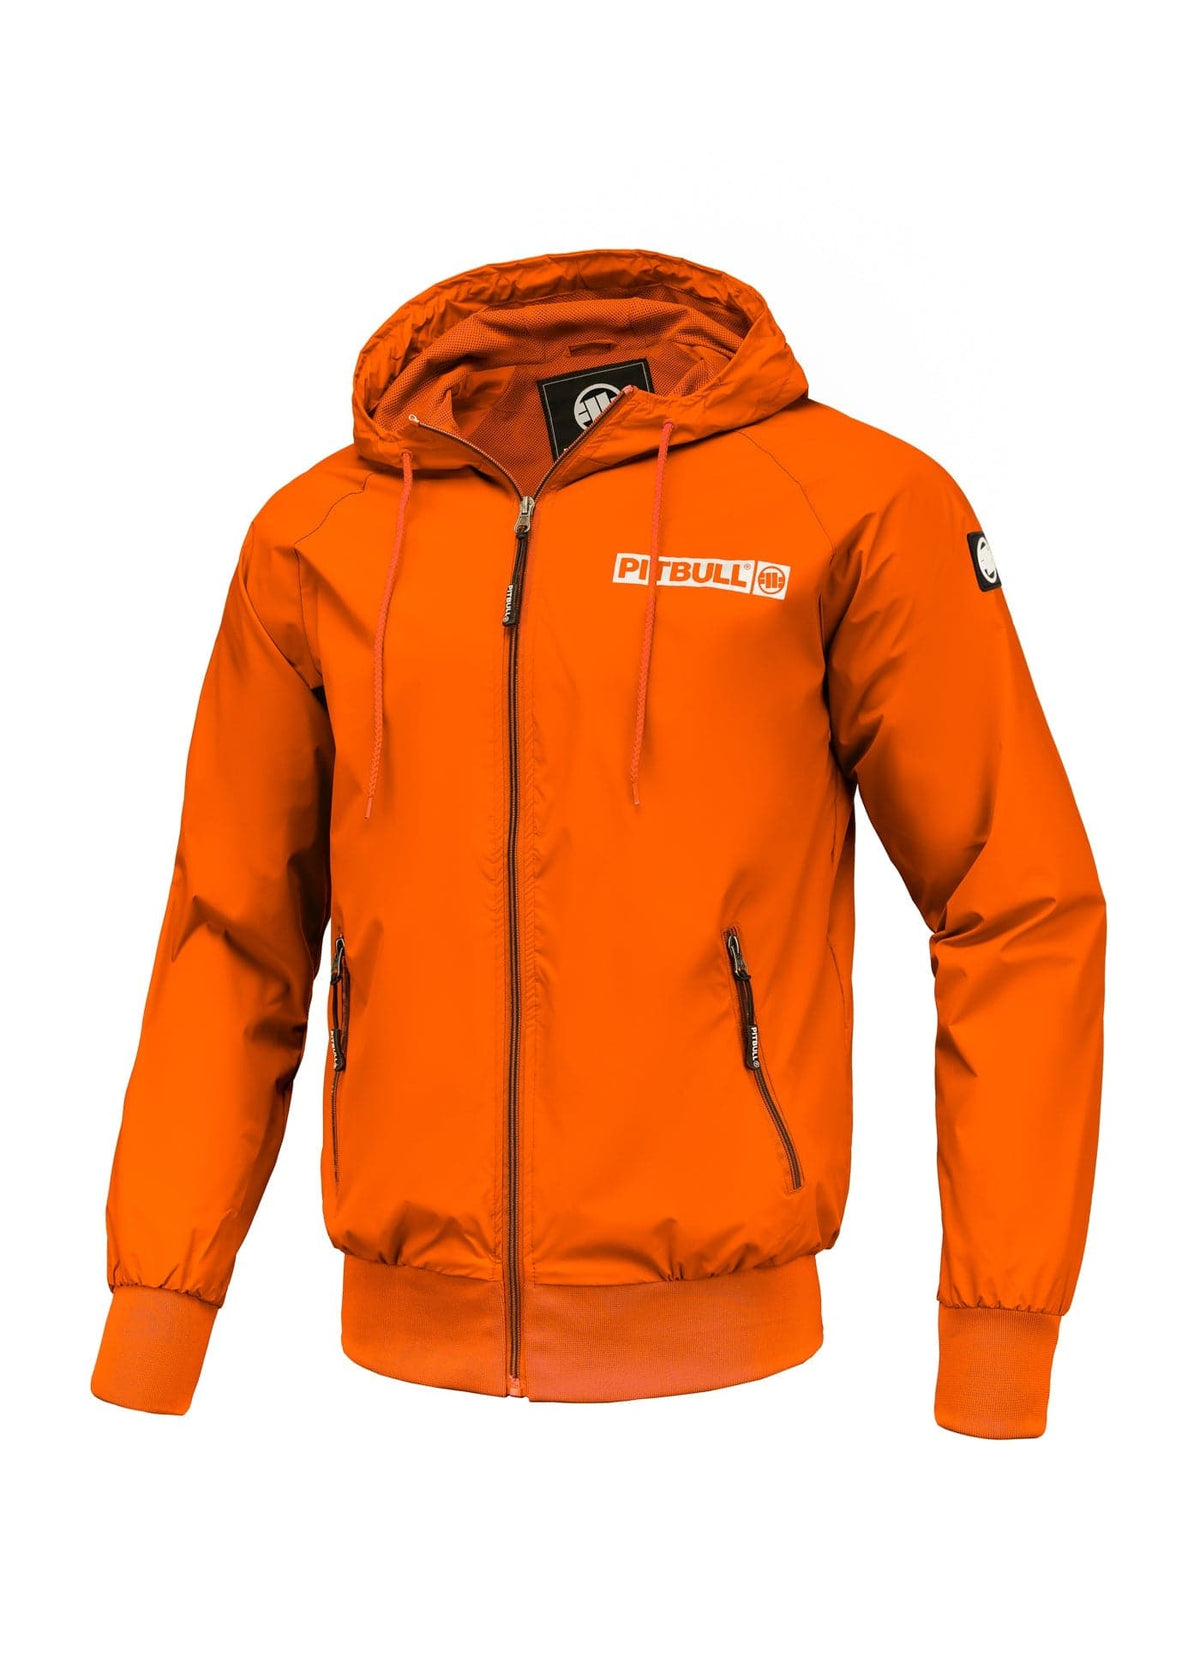 ATHLETIC LOGO Orange Jacket - Pitbullstore.eu